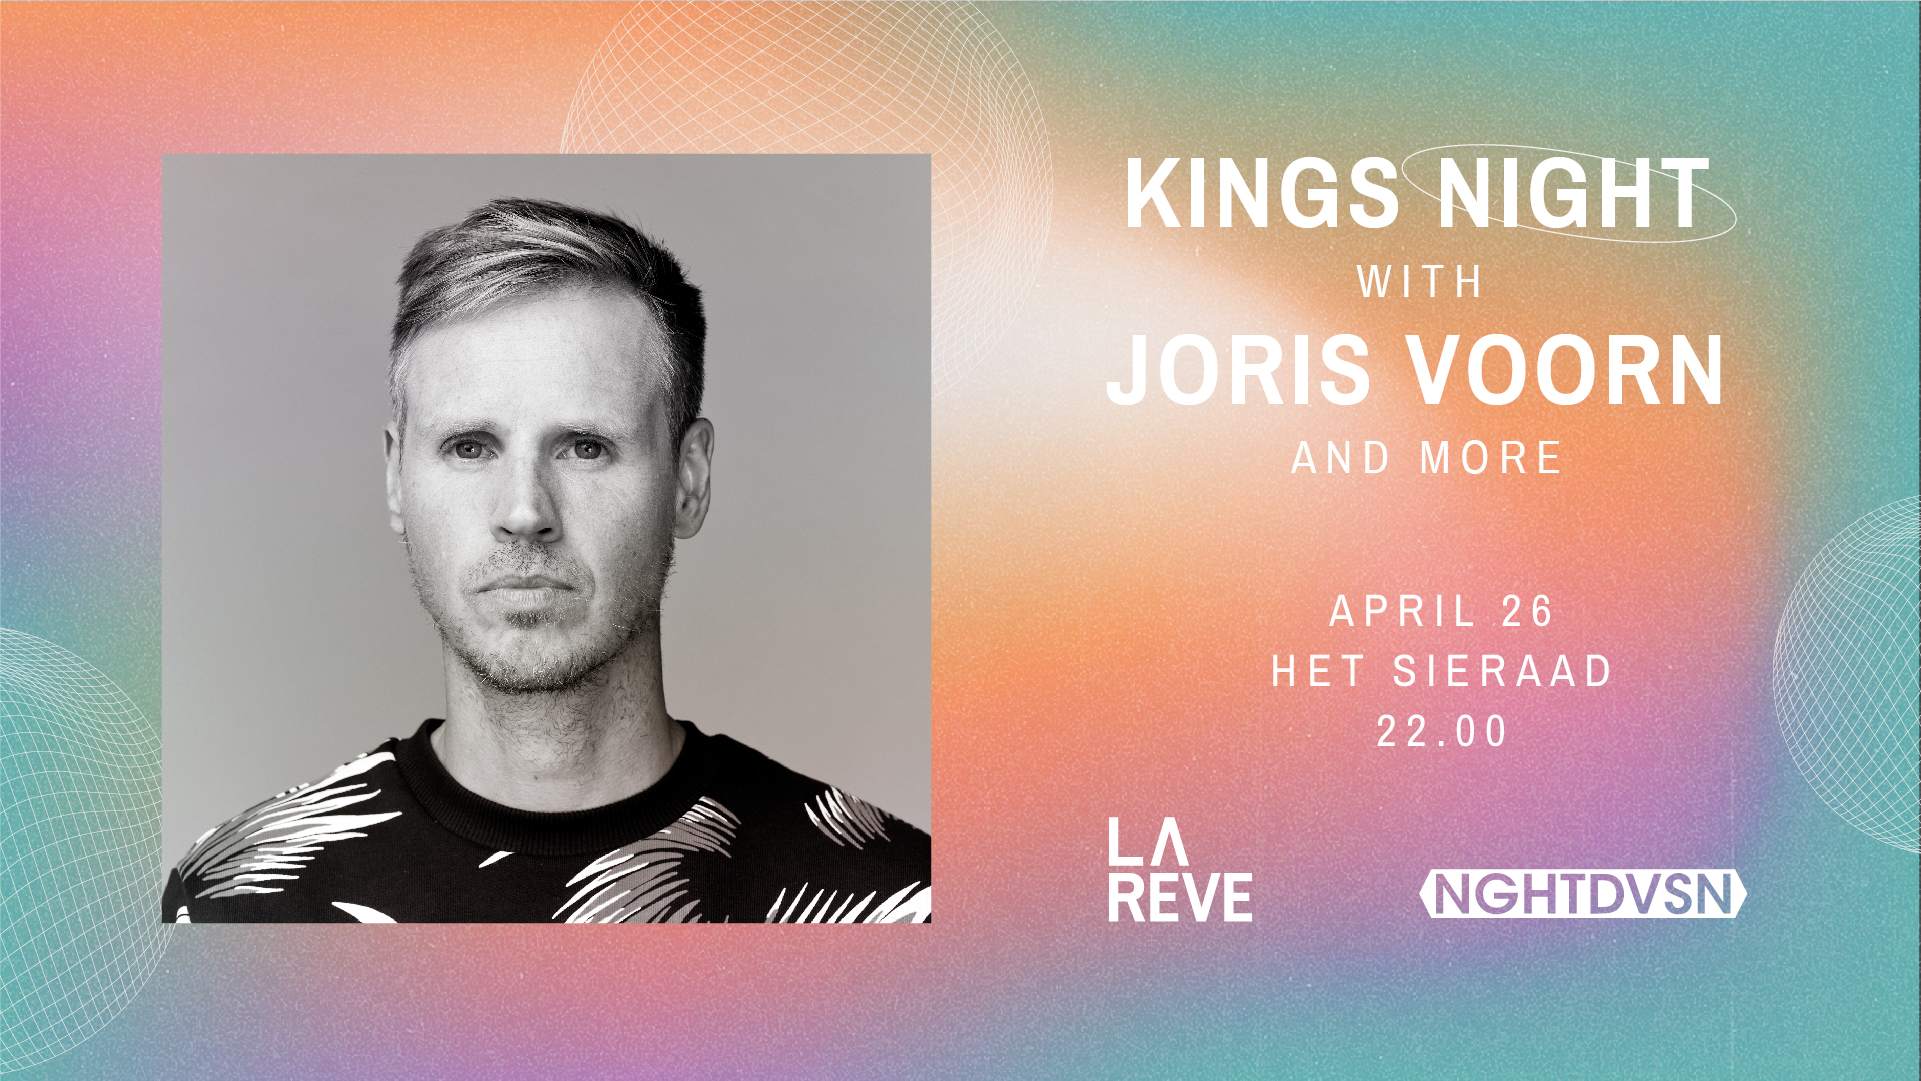 Kings Night with Joris Voorn & Colyn - Página frontal